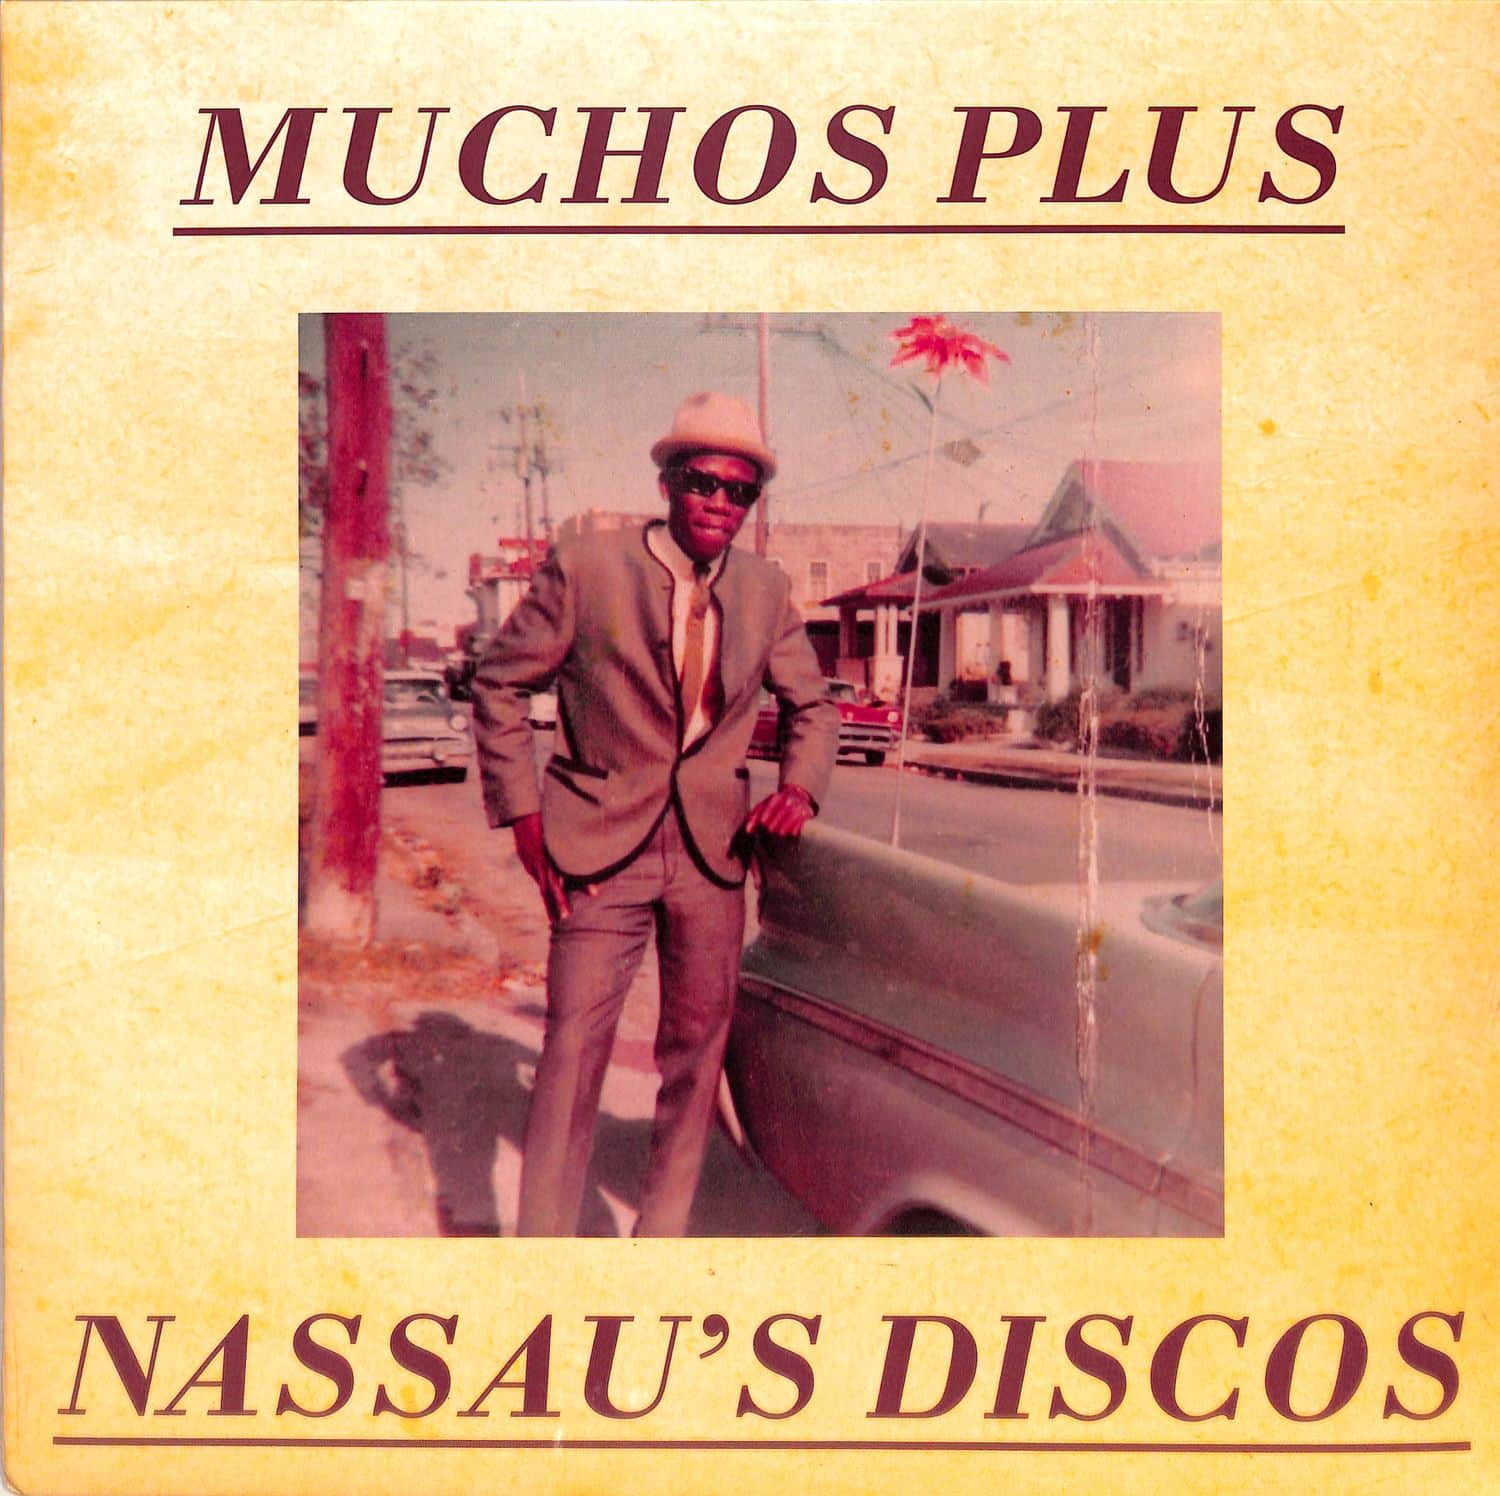 Mucho Plus - NASSAUS DISCO